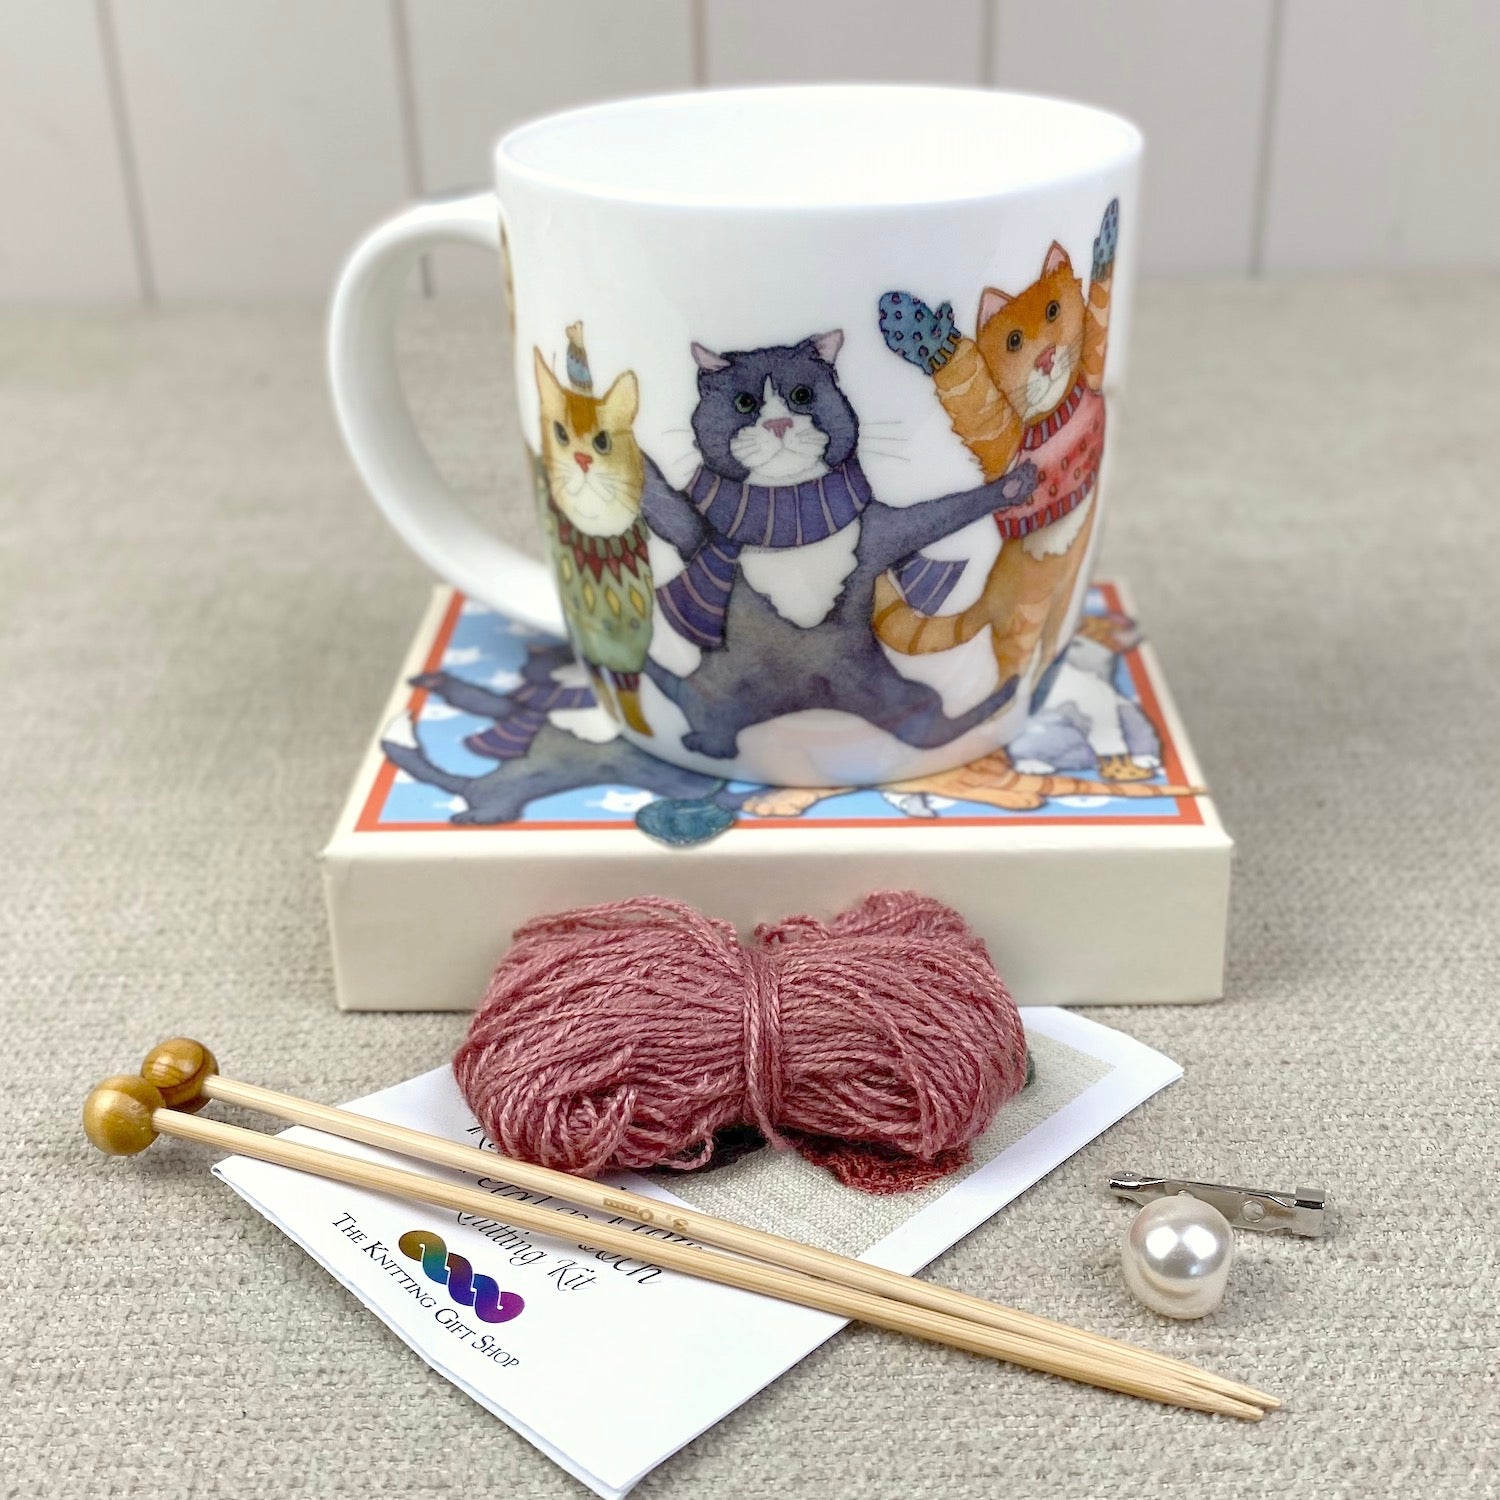 'Kittens in Mittens' Mug & Knitting Kit Gift Set